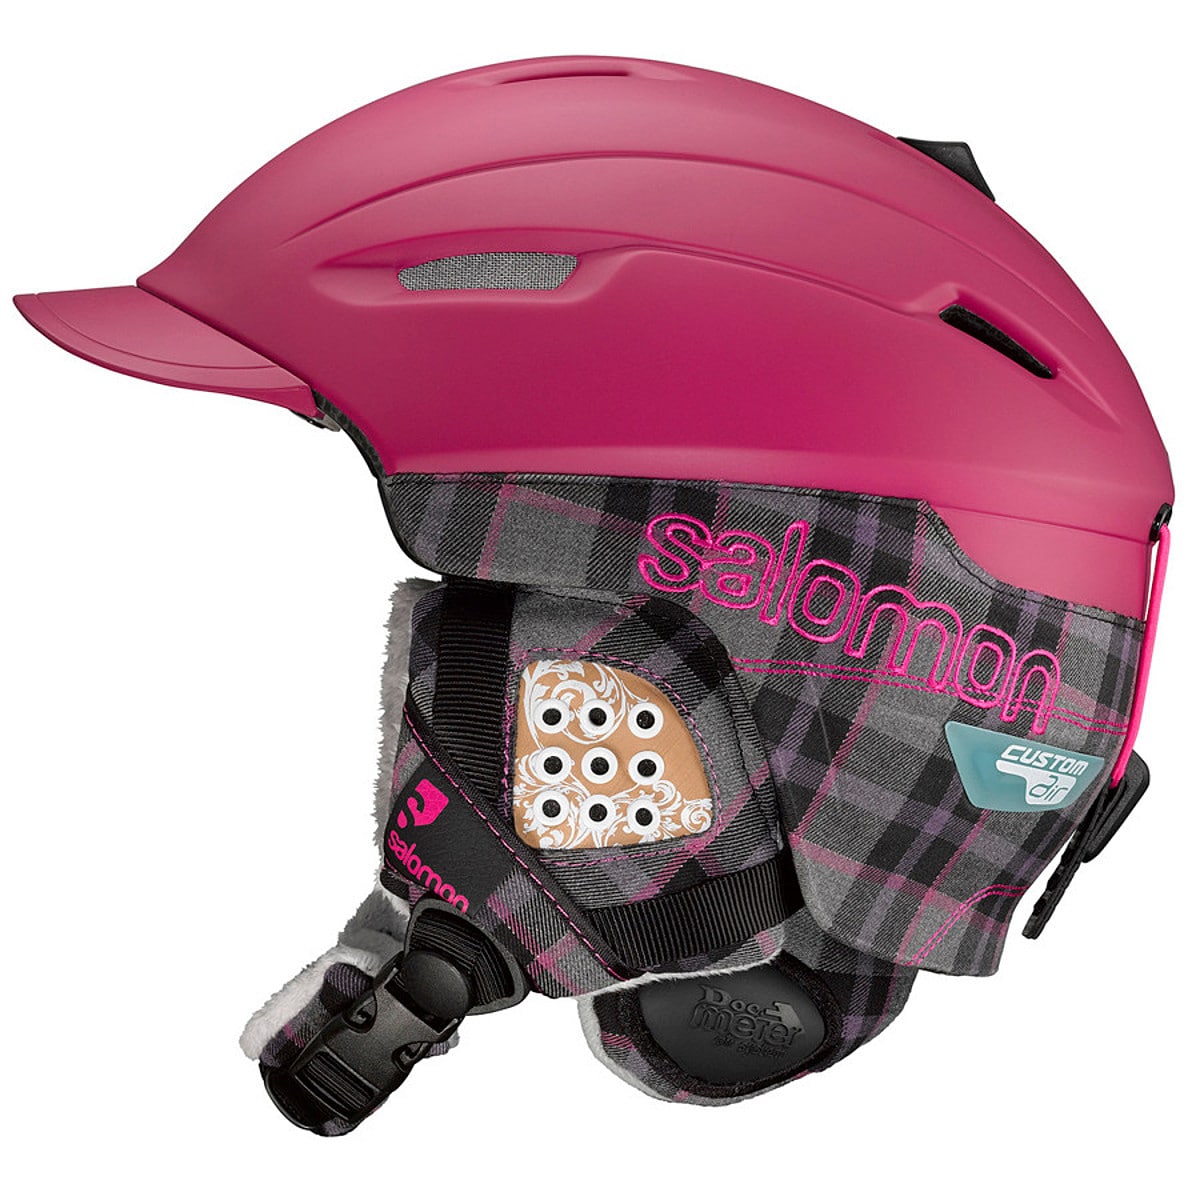 Hammer galning lovende Salomon Poison Custom Air Helmet - Women's - Ski